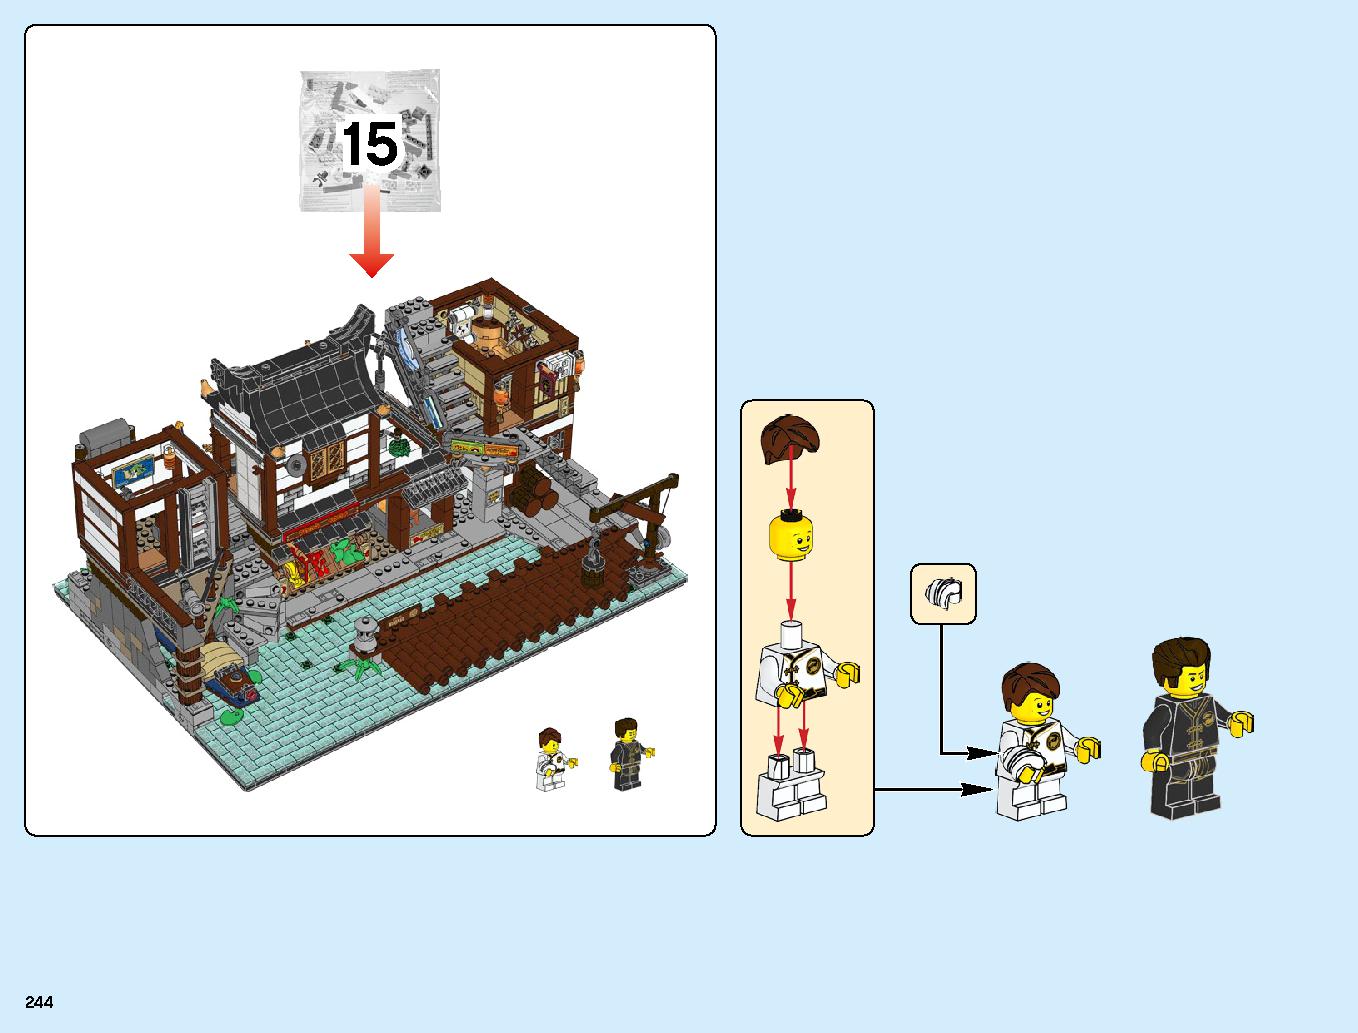 ニンジャゴーシティ・ポートパーク 70657 レゴの商品情報 レゴの説明書・組立方法 244 page